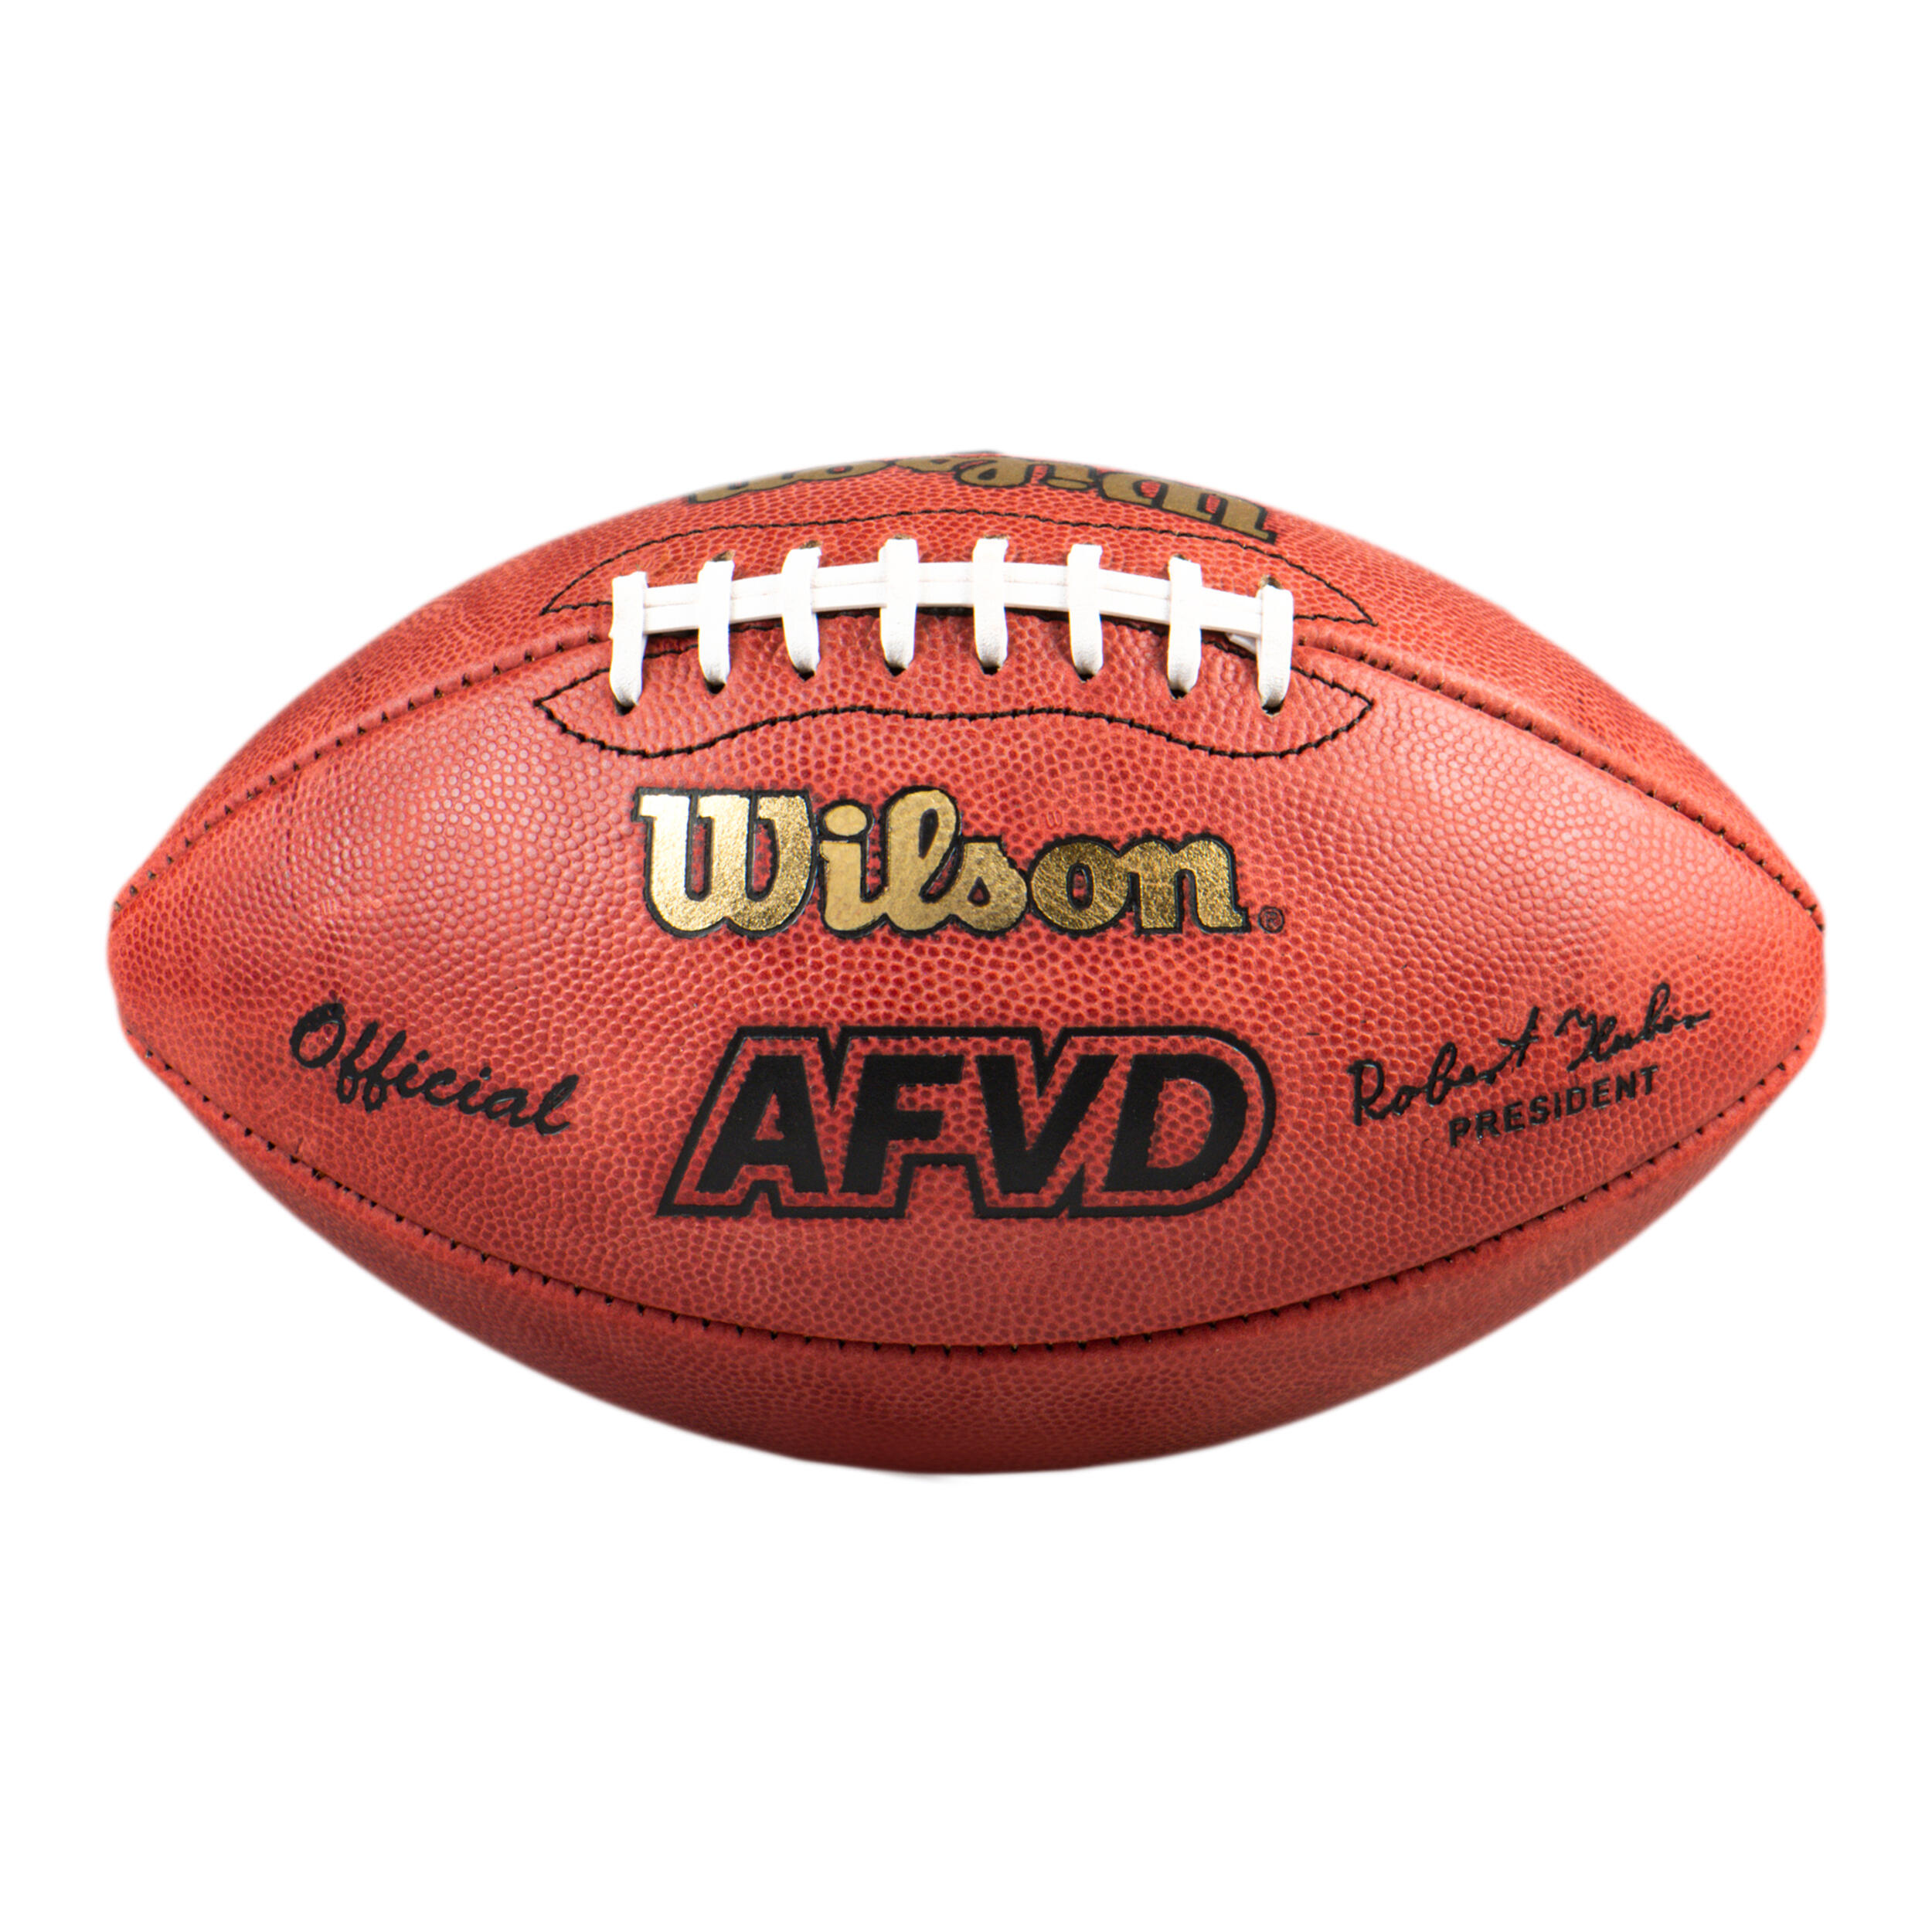 Minge oficială de fotbal american – AFVD GAME BALL WTF1000 maro Accesorii